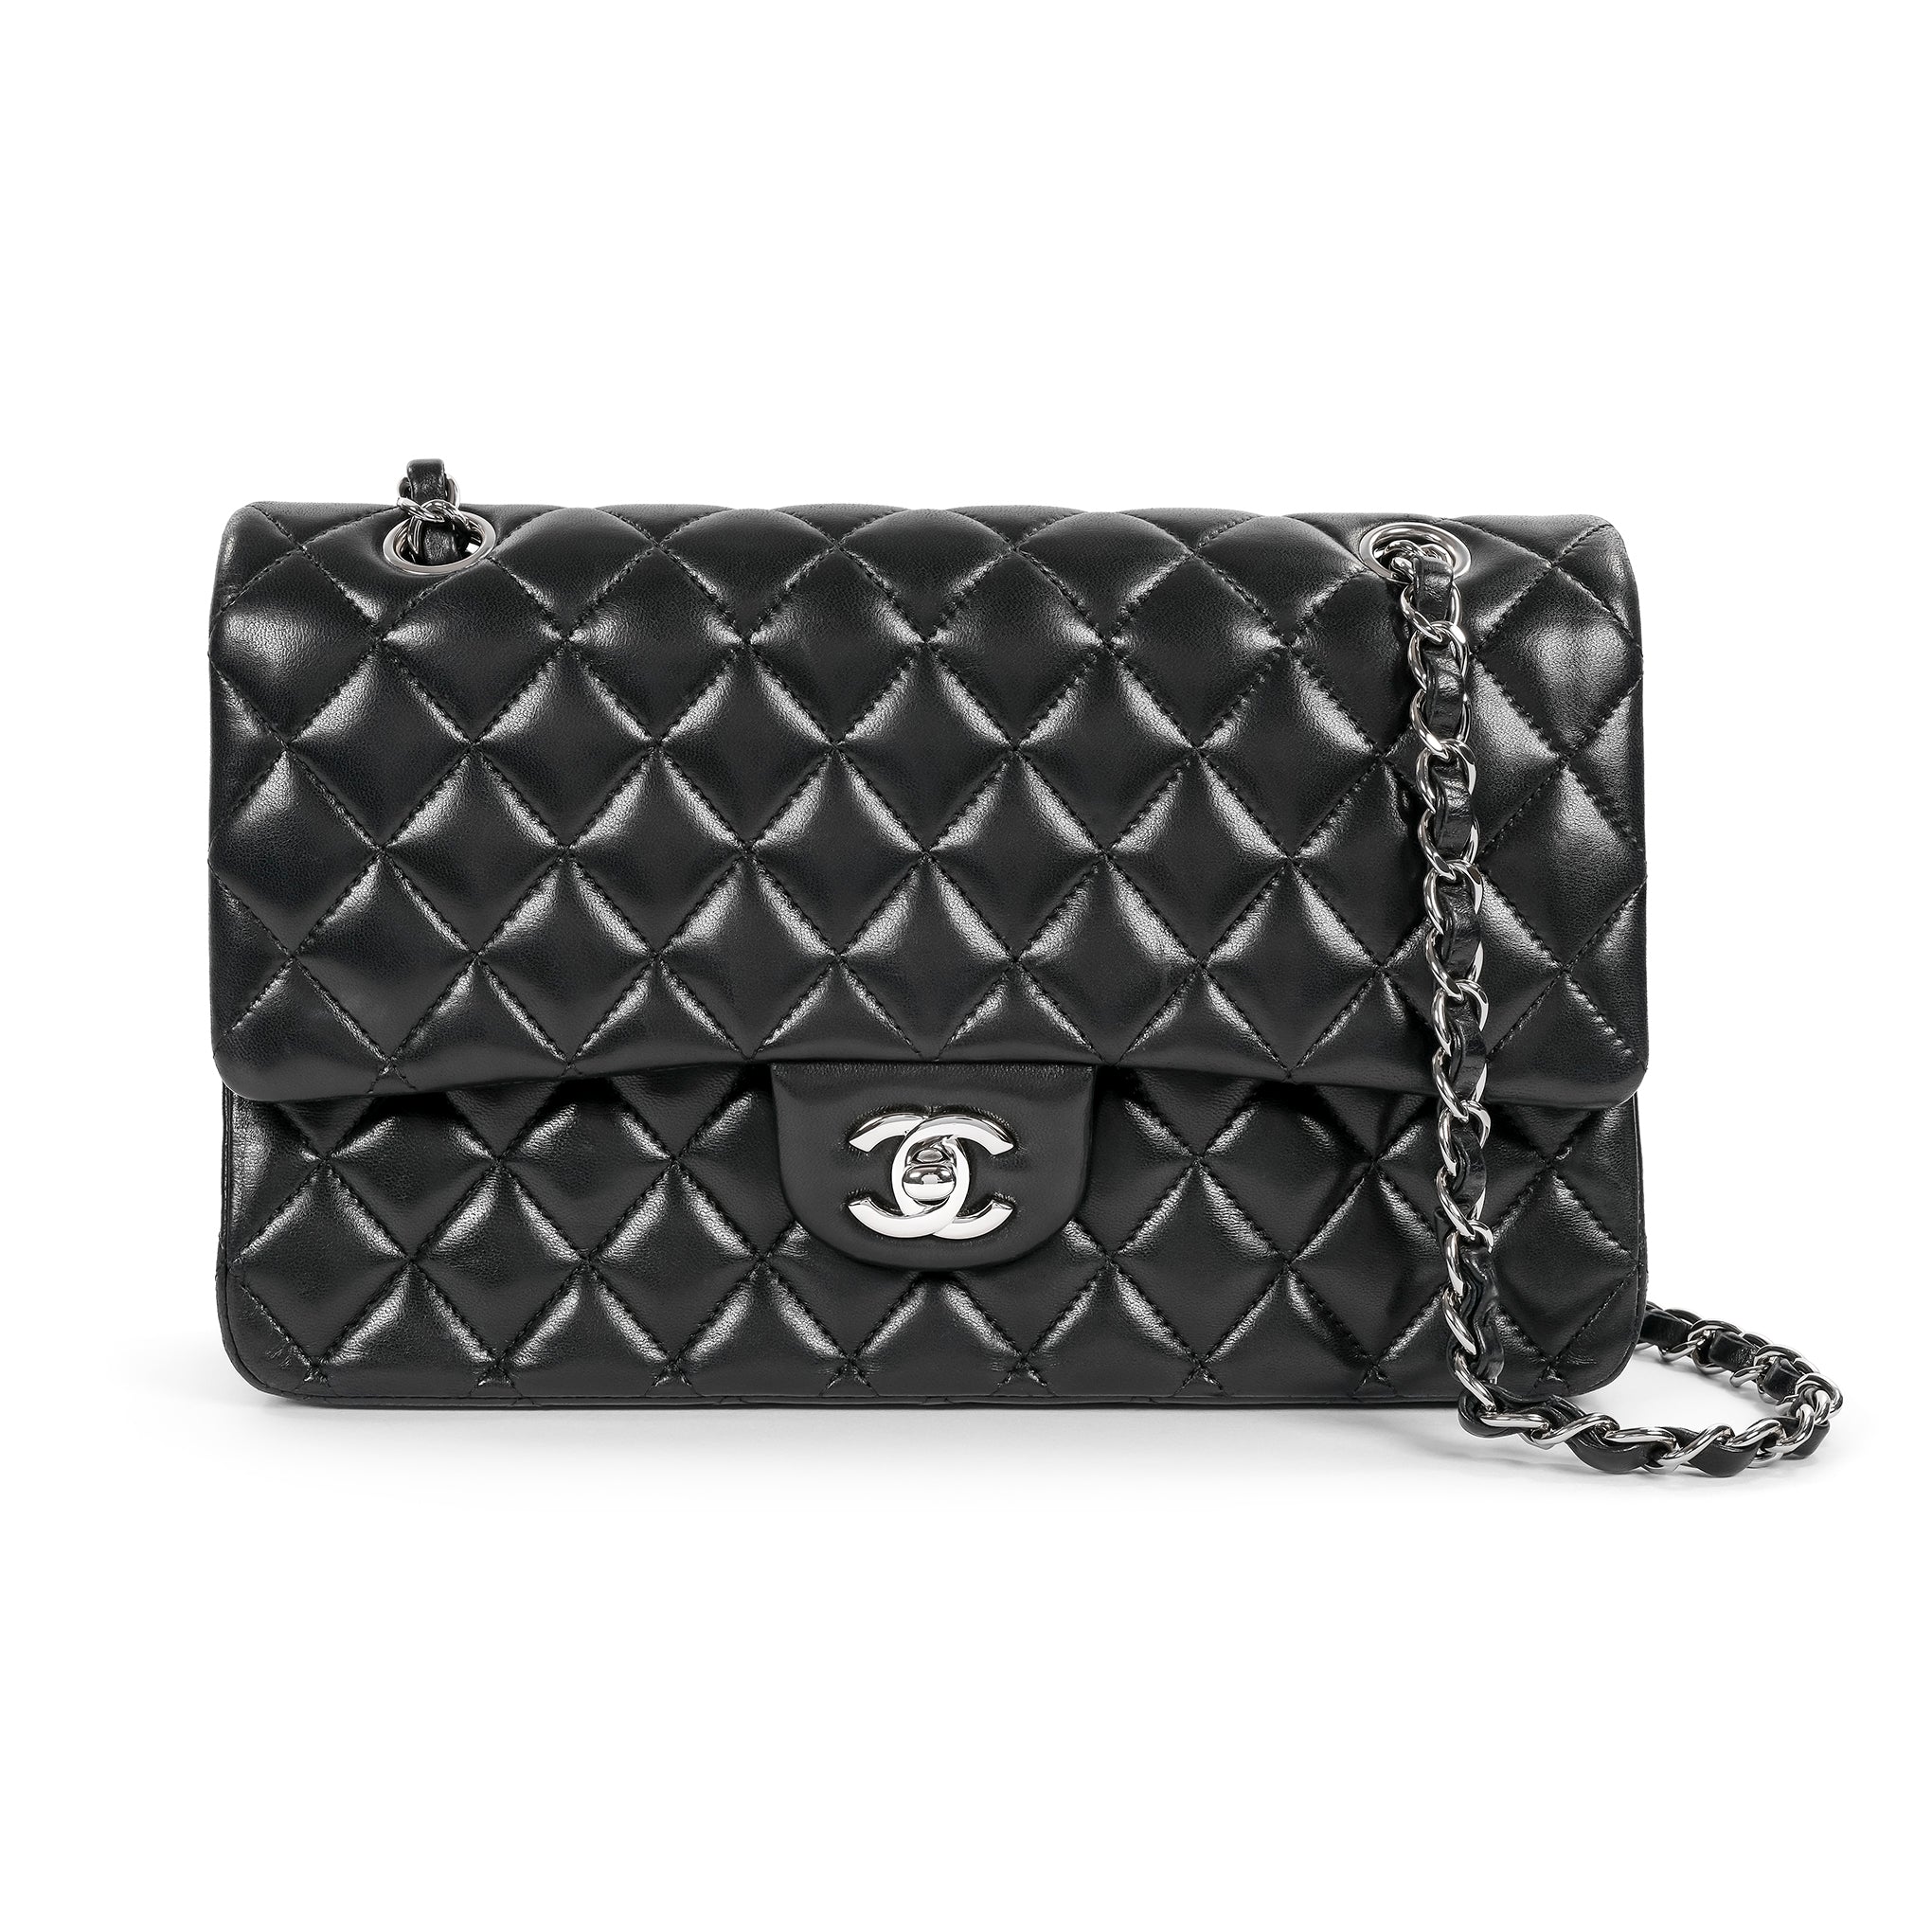 Beige Chanel 2.55 Reissue Lambskin Leather Double Flap Bag | RvceShops  Revival | Sac bandoulière Chanel Boy en cuir verni bleu-marine